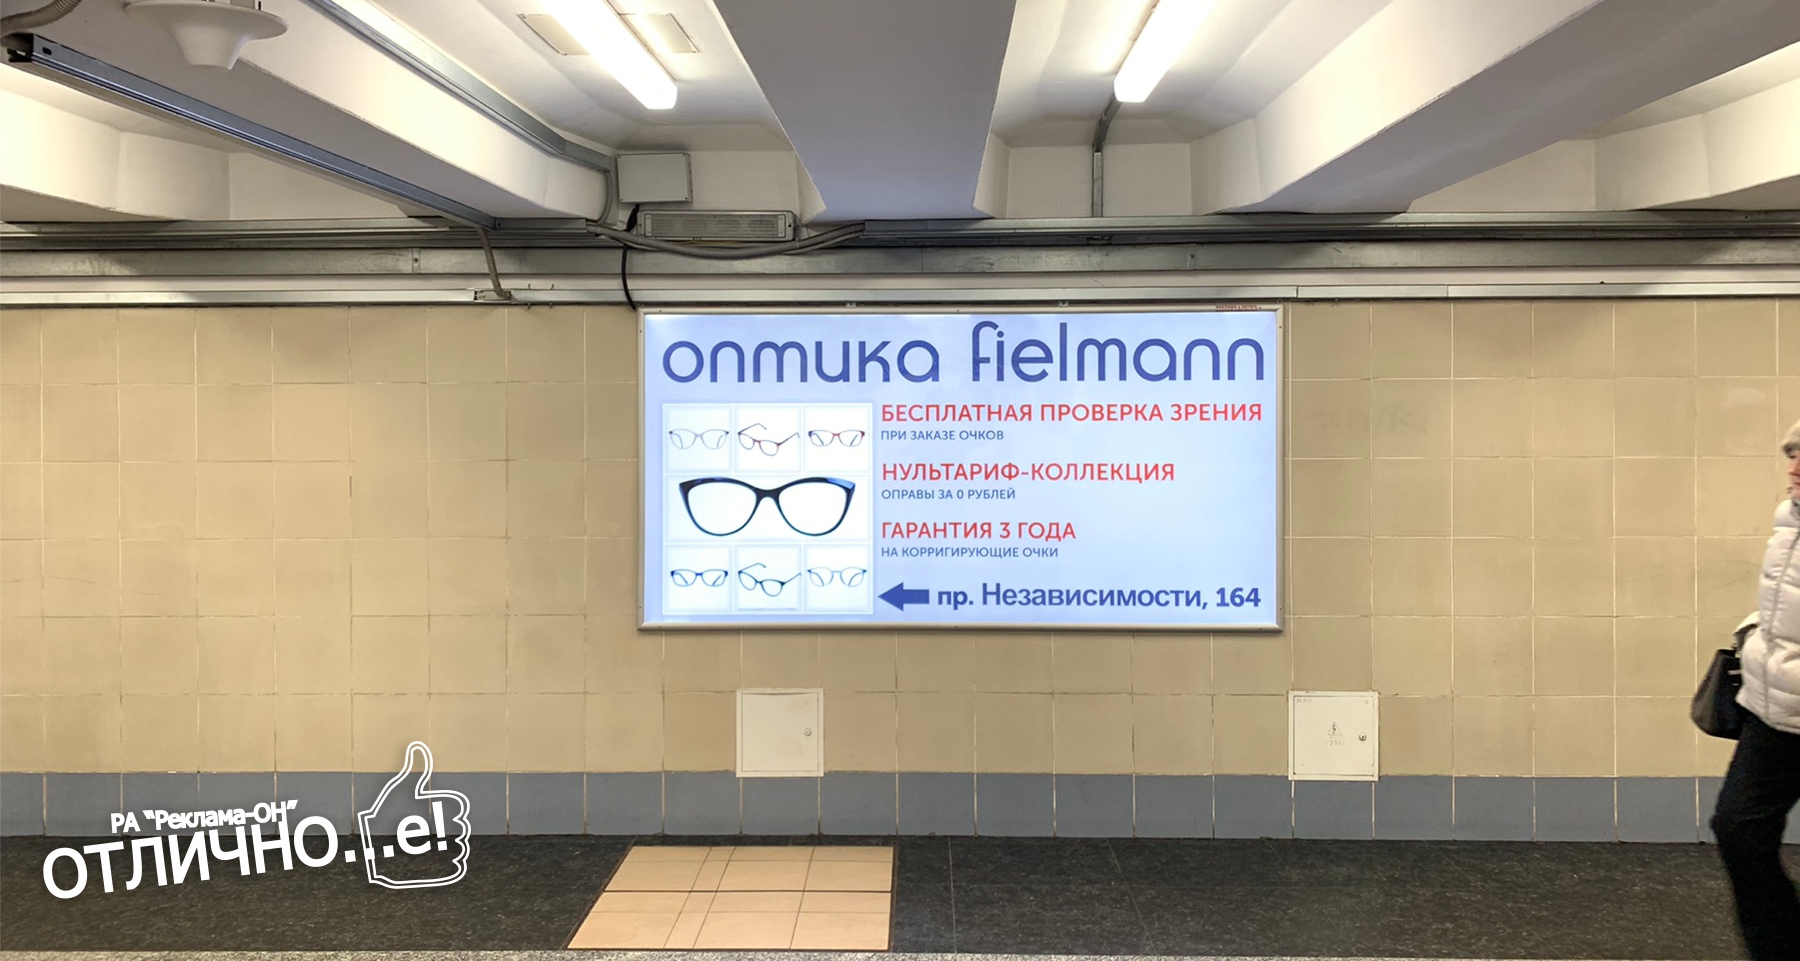 Ультраяркий световой лайтбокс на станции метро Уручье (переход) reklama-on.by